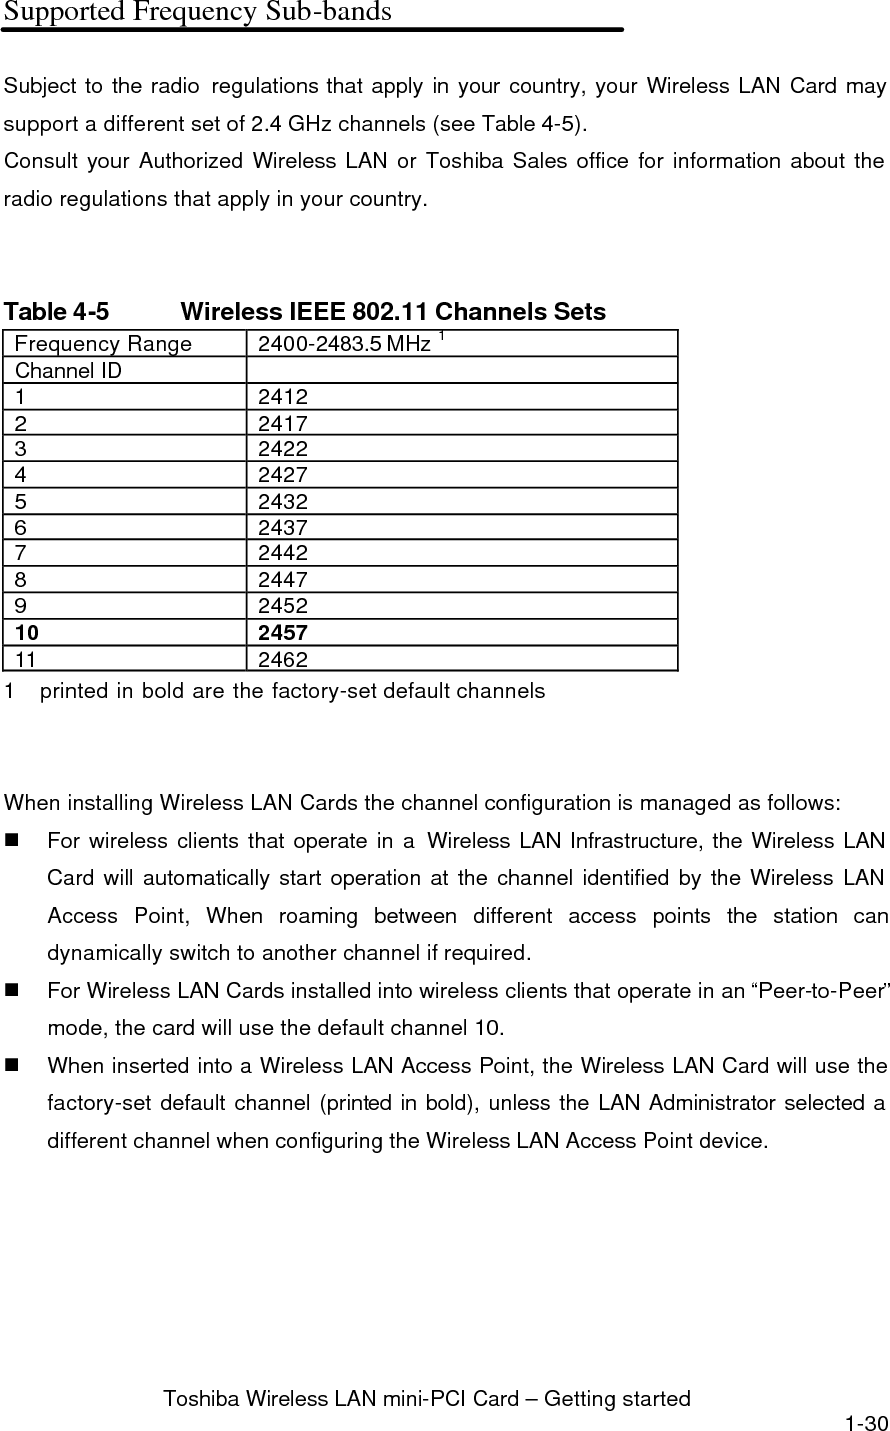  Toshiba Wireless LAN mini-PCI Card – Getting started 1-31        